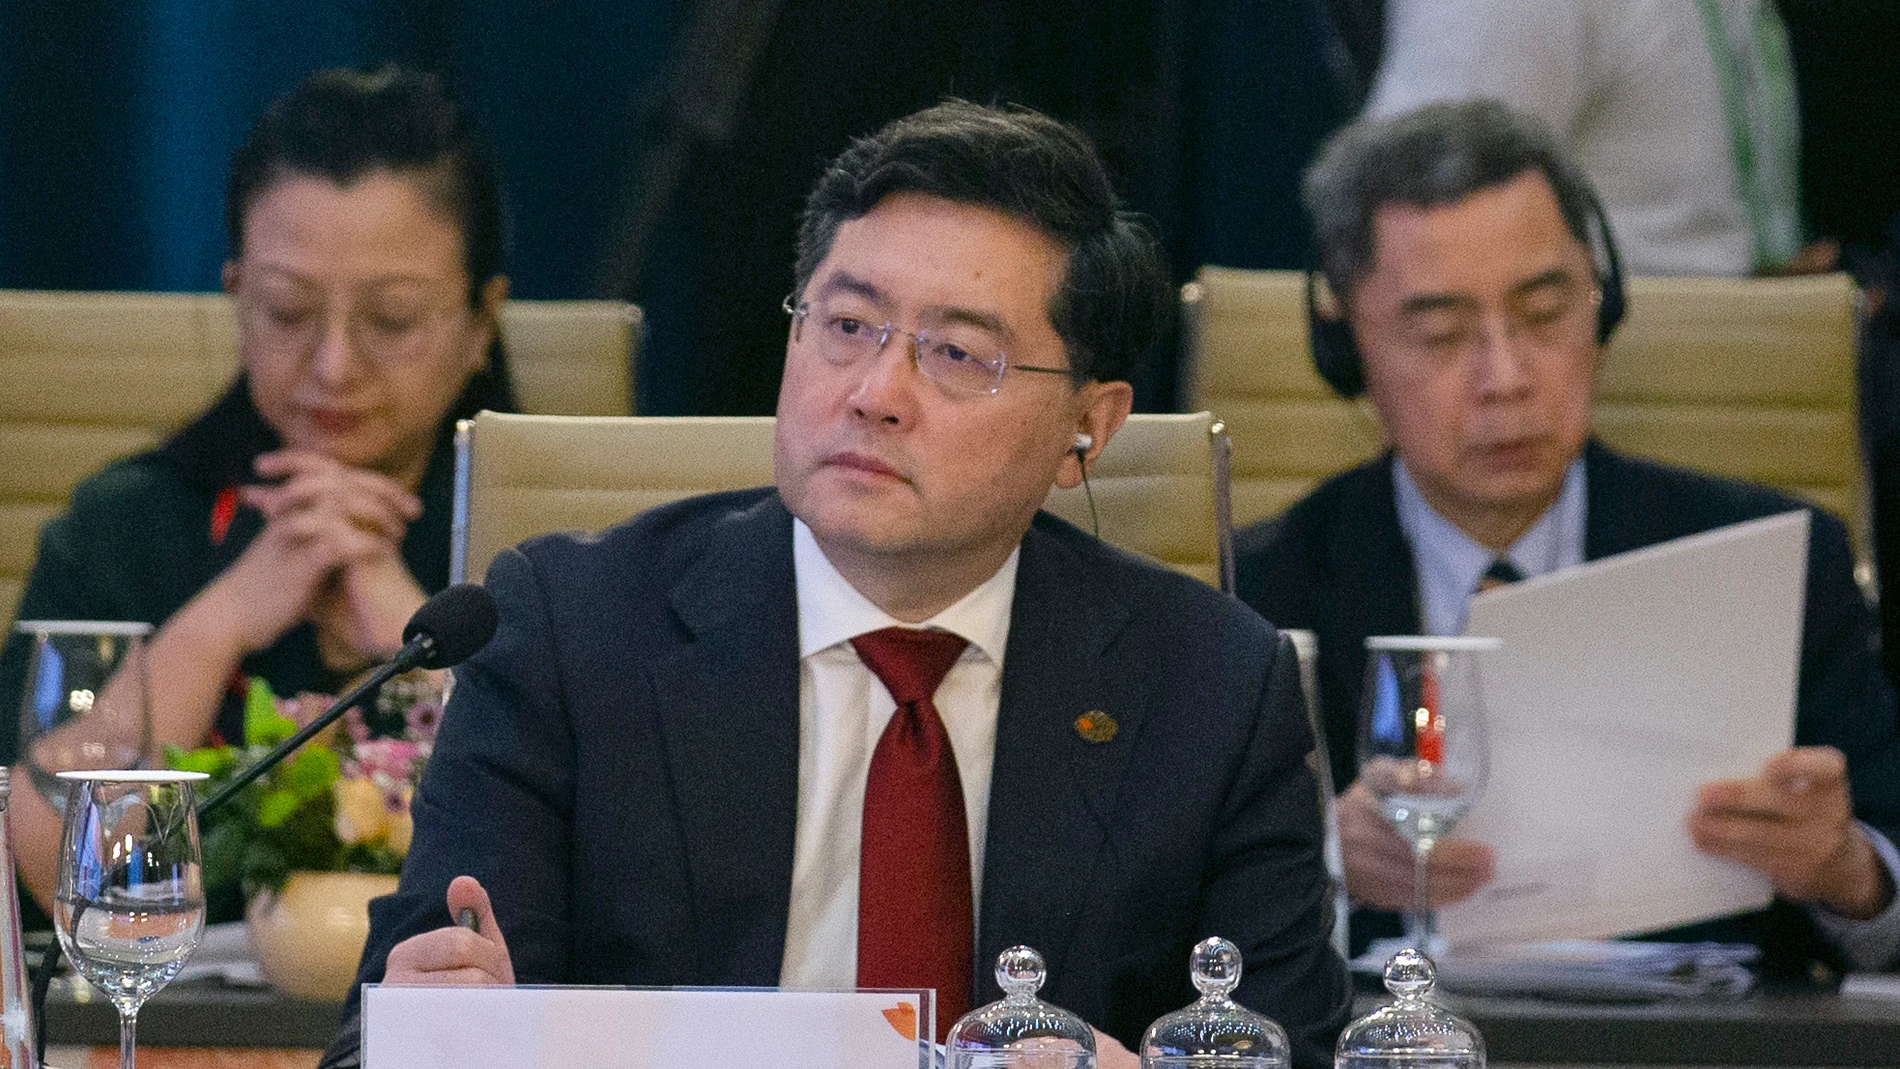 AMP.-China.- China asegura que su relación con Rusia no es una amenaza para ningún país